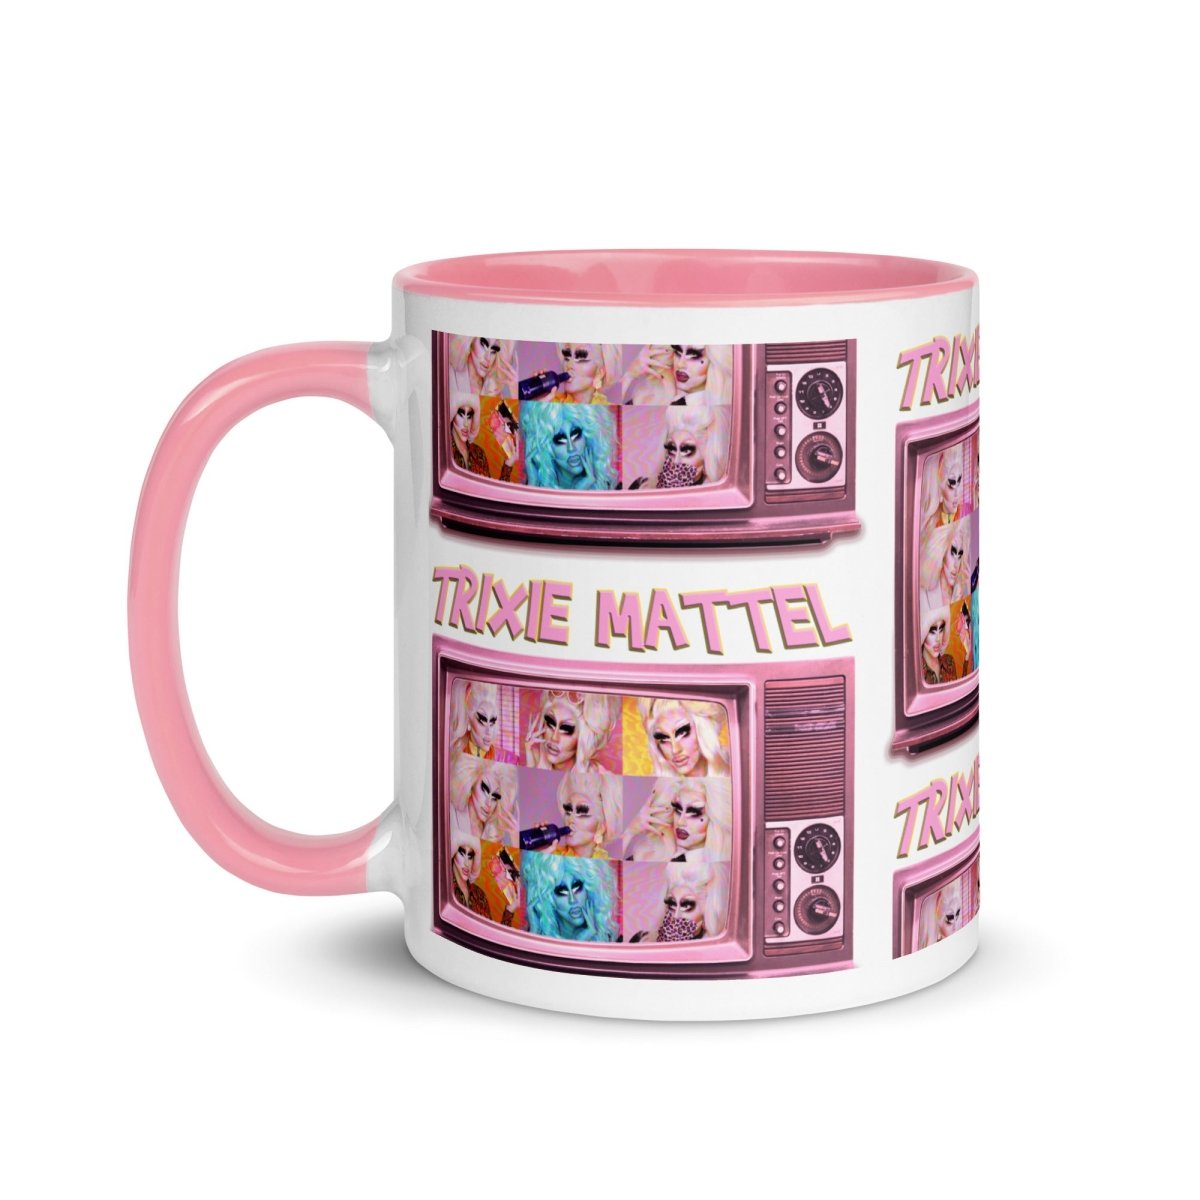 Trixie Mattel - TV Mug - dragqueenmerch